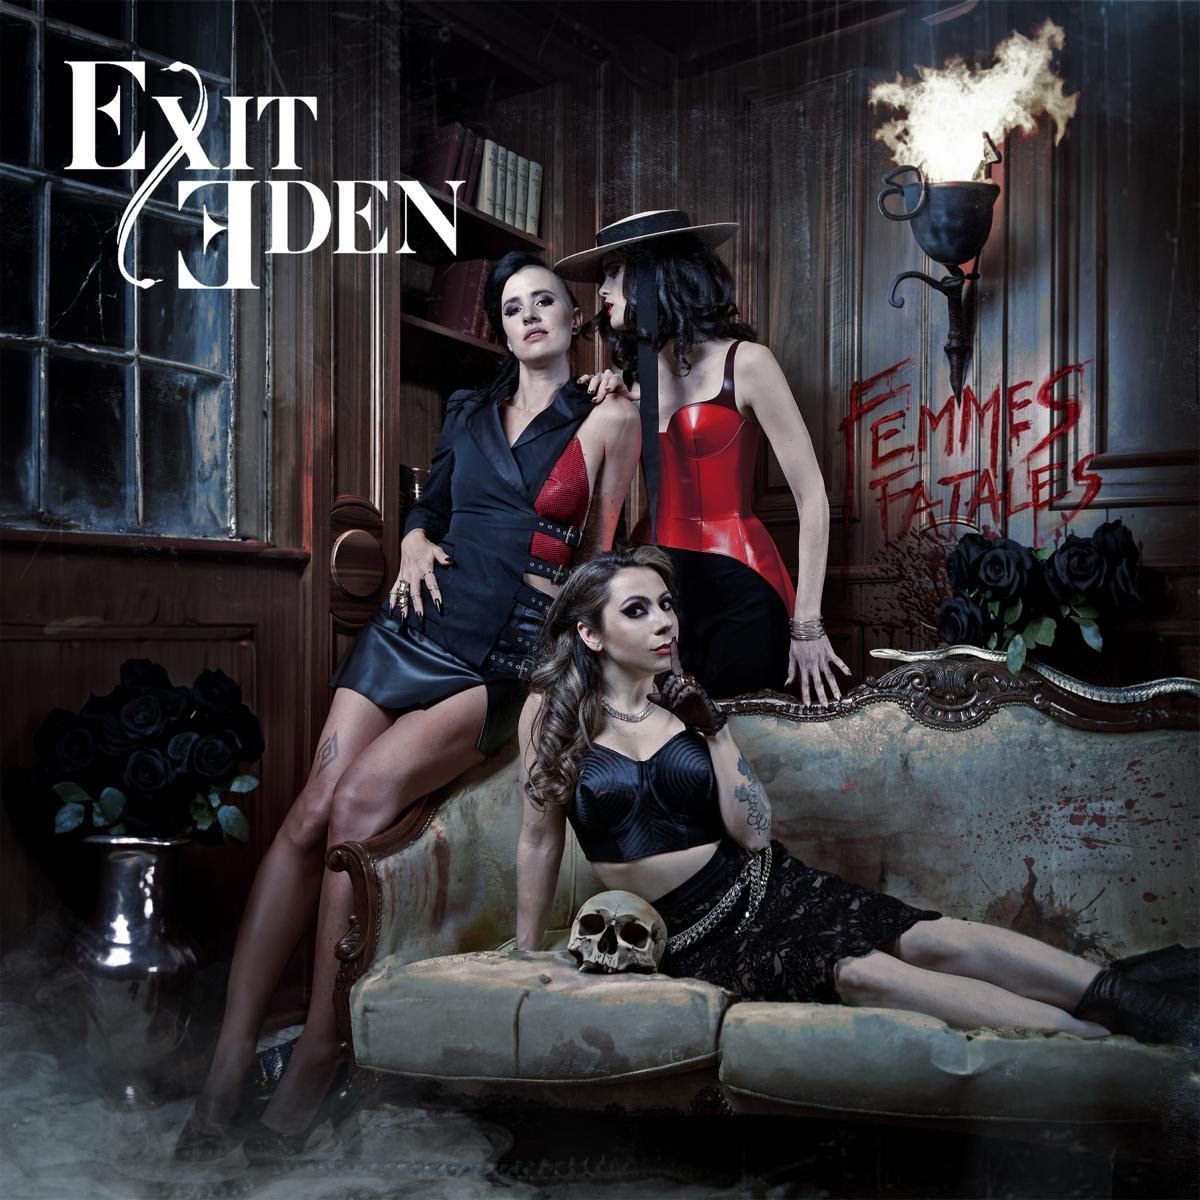 Exit Eden - Désenchantée (clip)